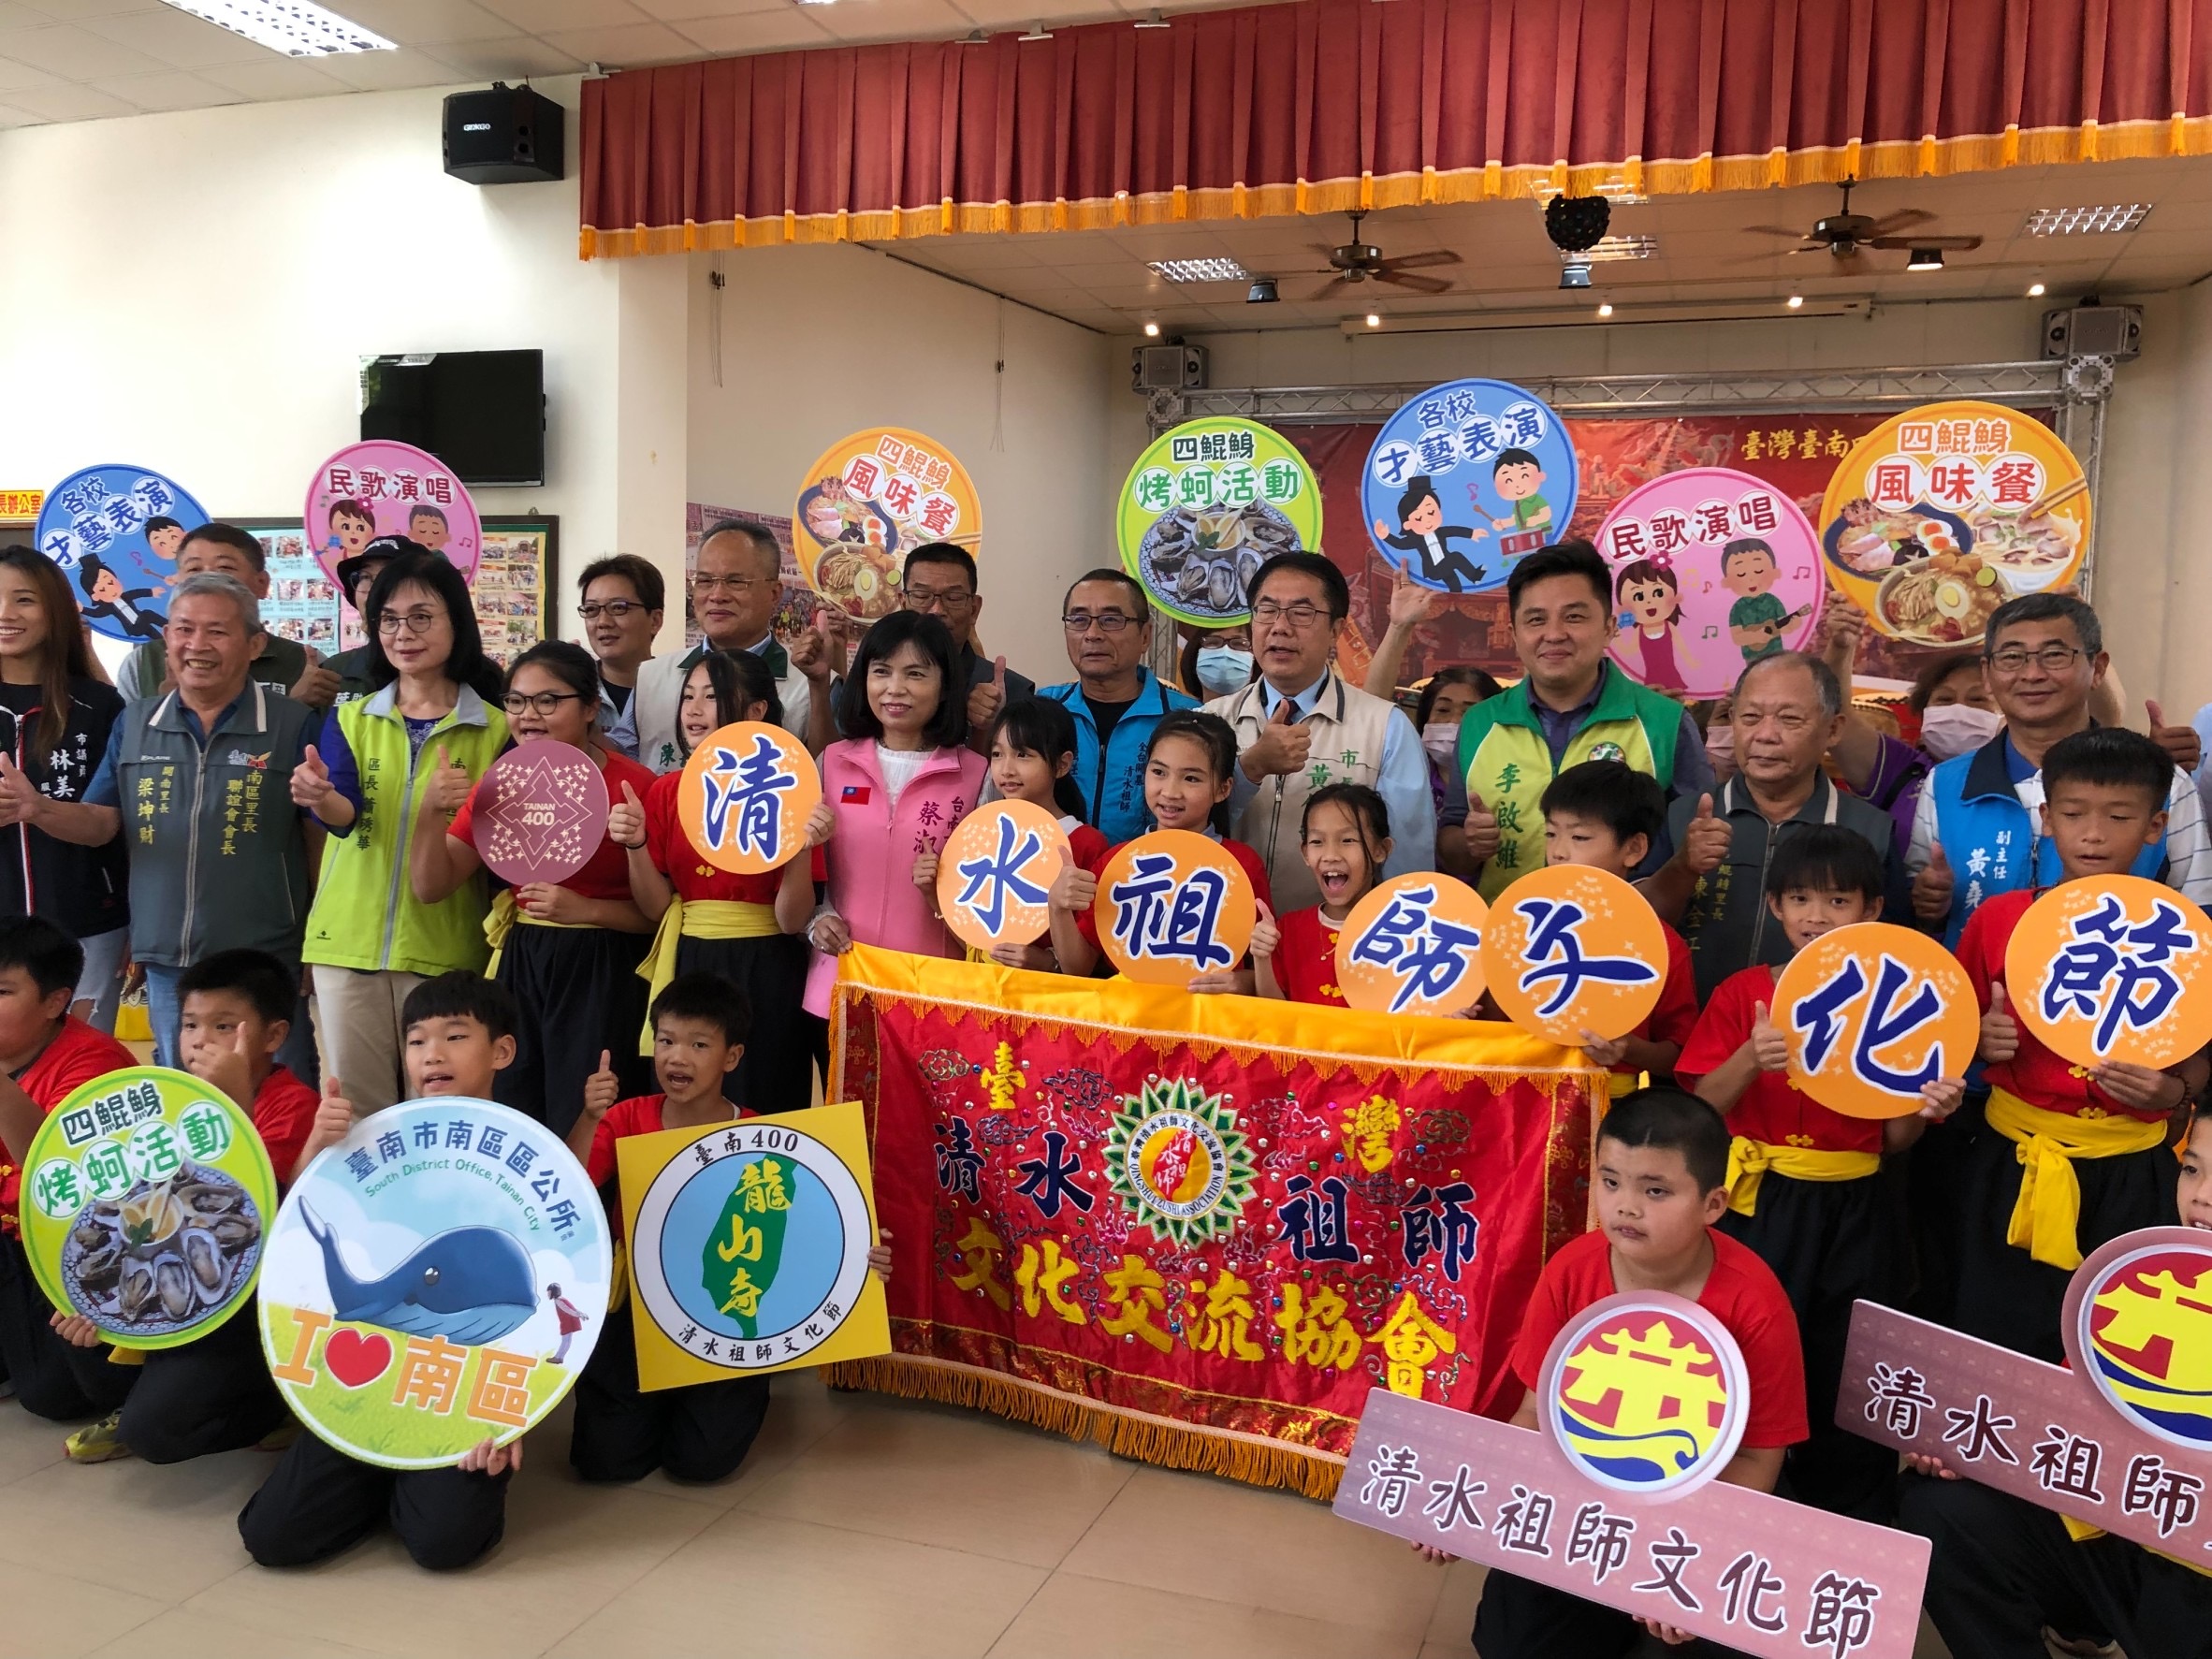 台南市举办「清水祖师文化节」，邀全台神尊同台交流、民众体验宗教工艺文创与美食。图／南区公所提供